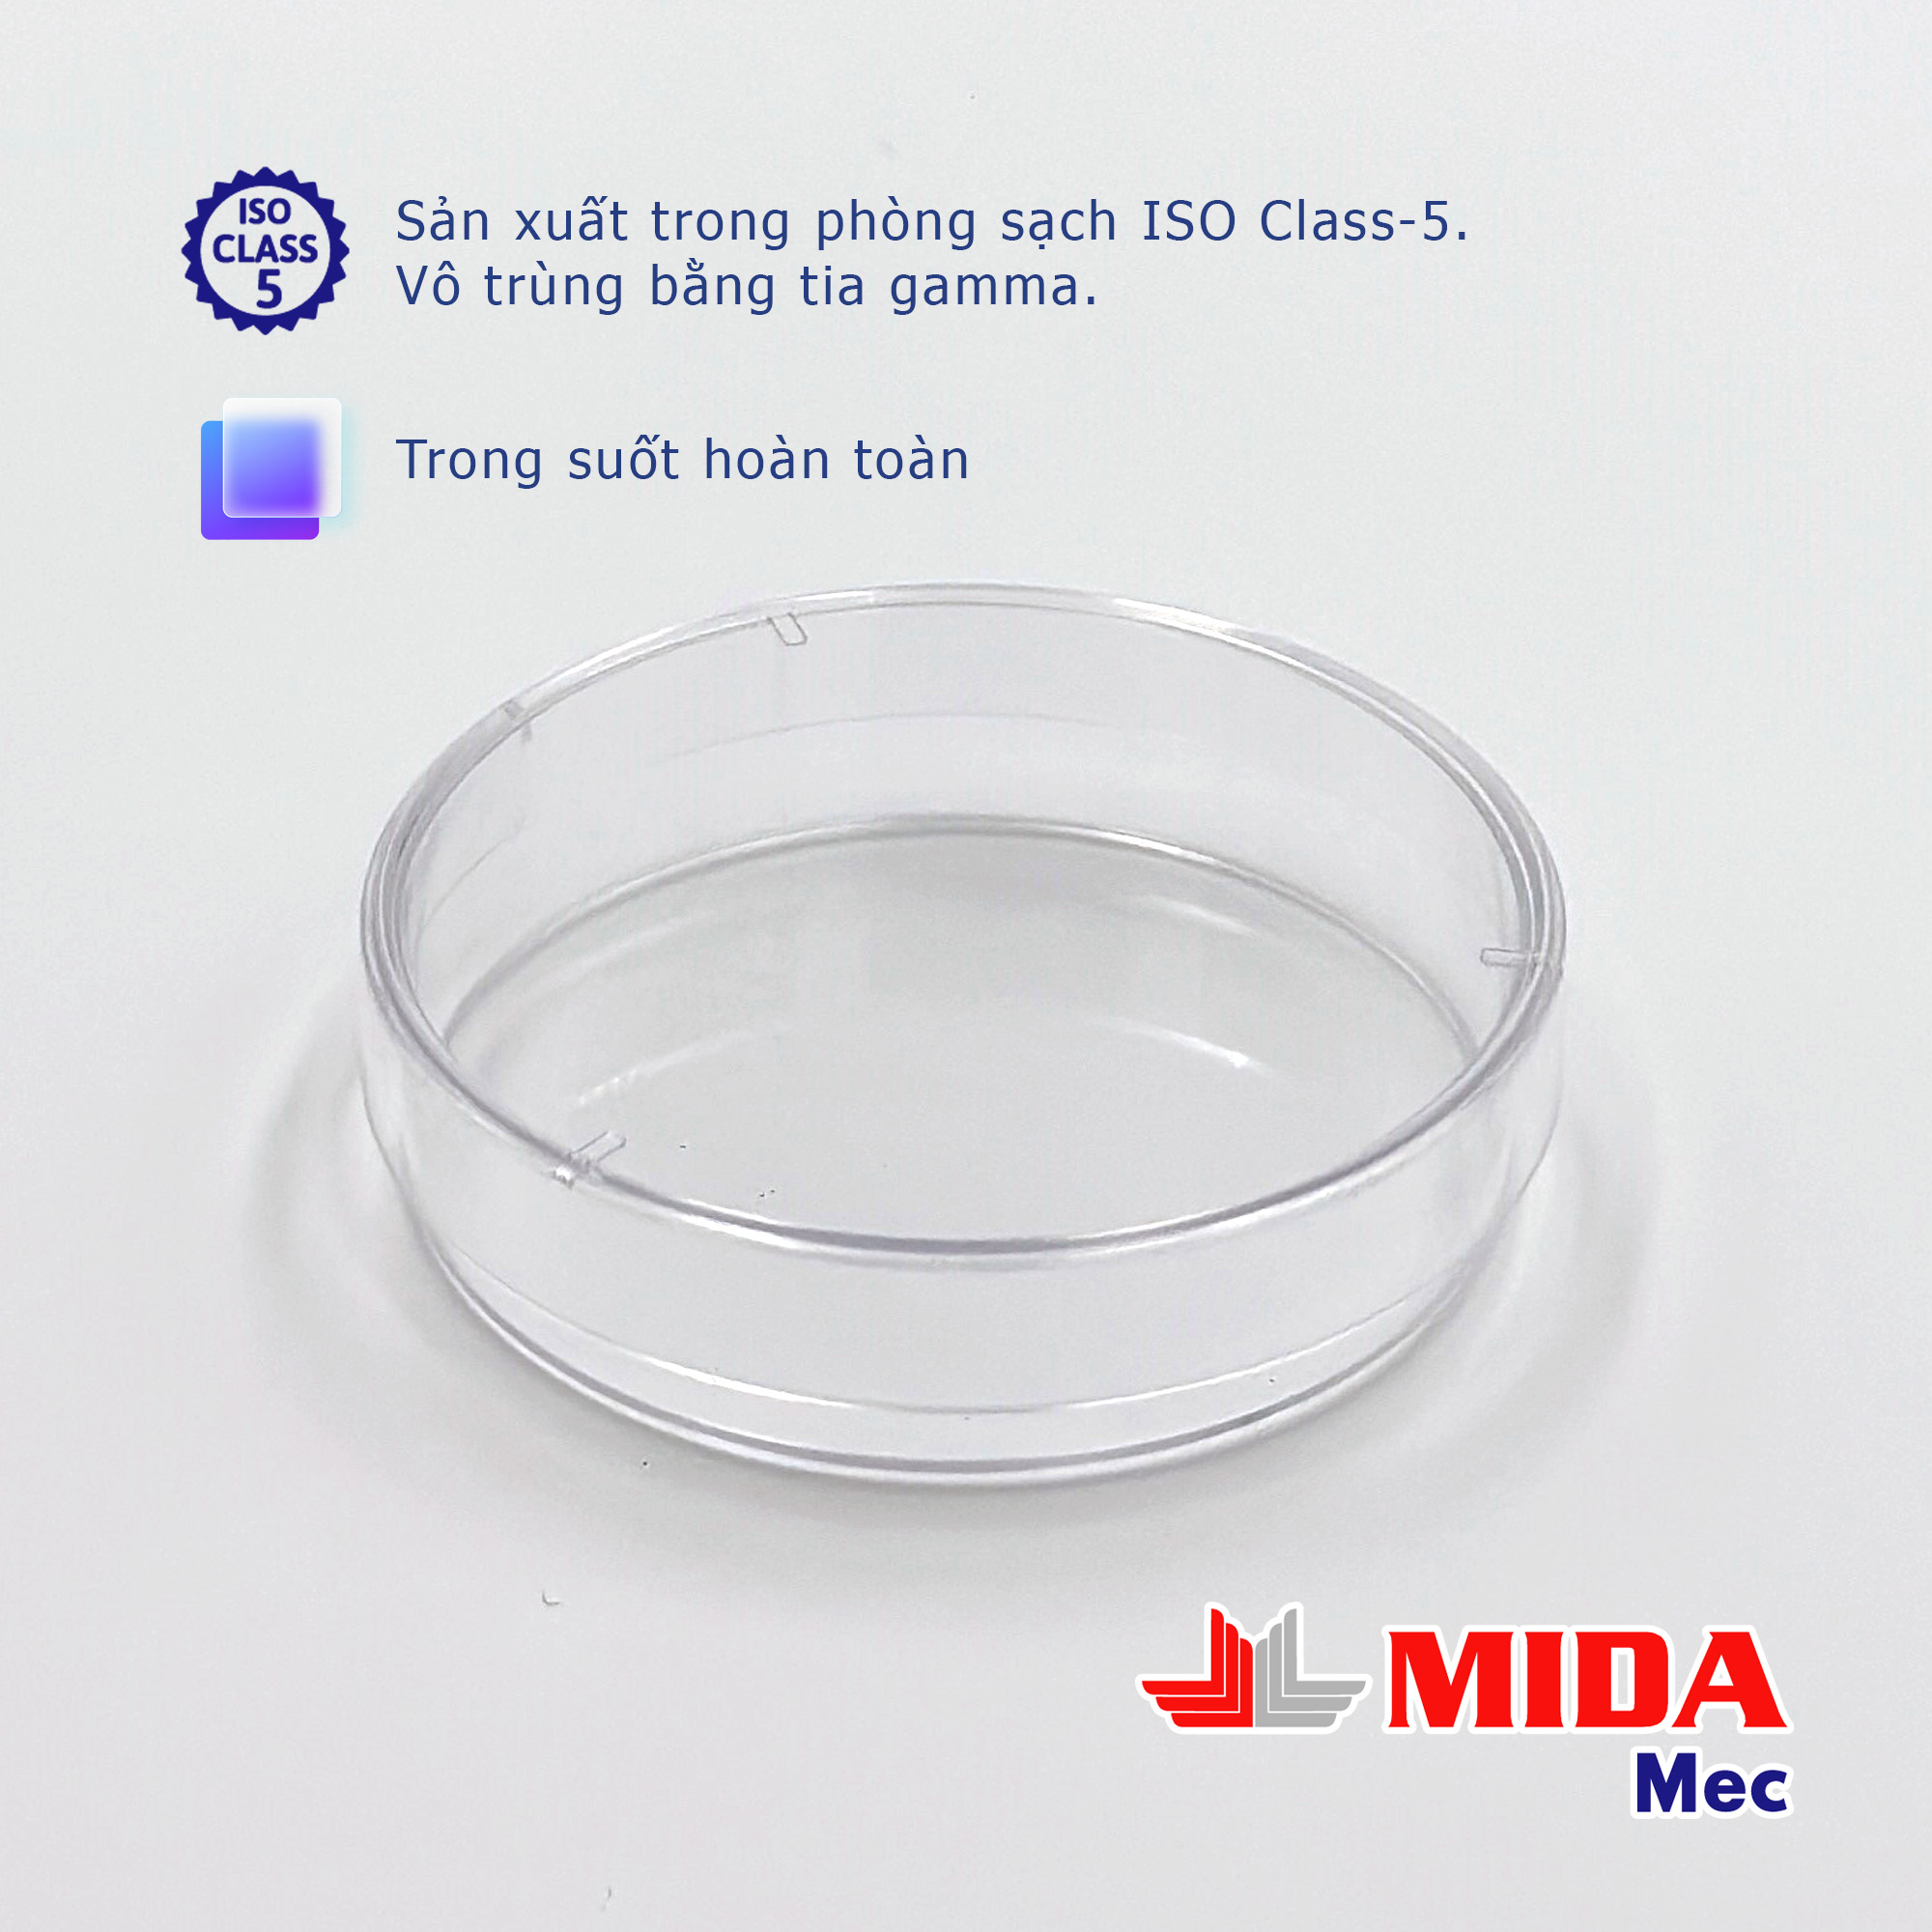 Đĩa Petri nhựa MidaMec 6015 đã tiệt trùng đóng gói 20 cái/bao